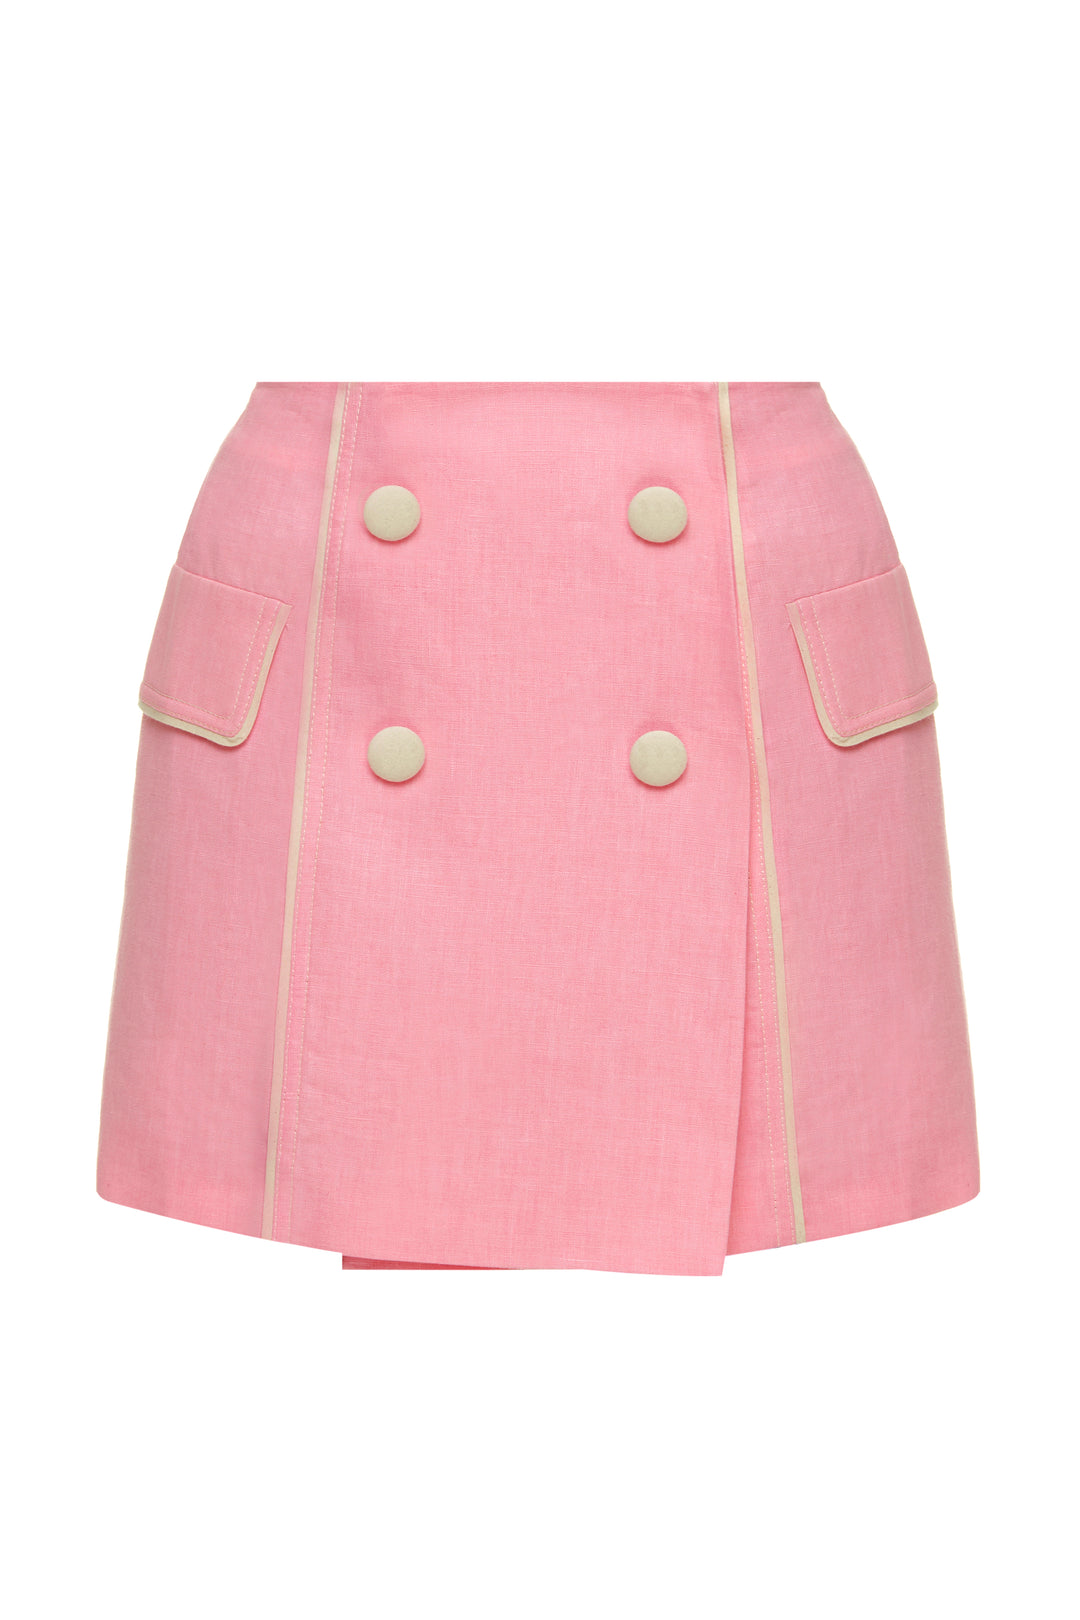 Baby pink linen skirt